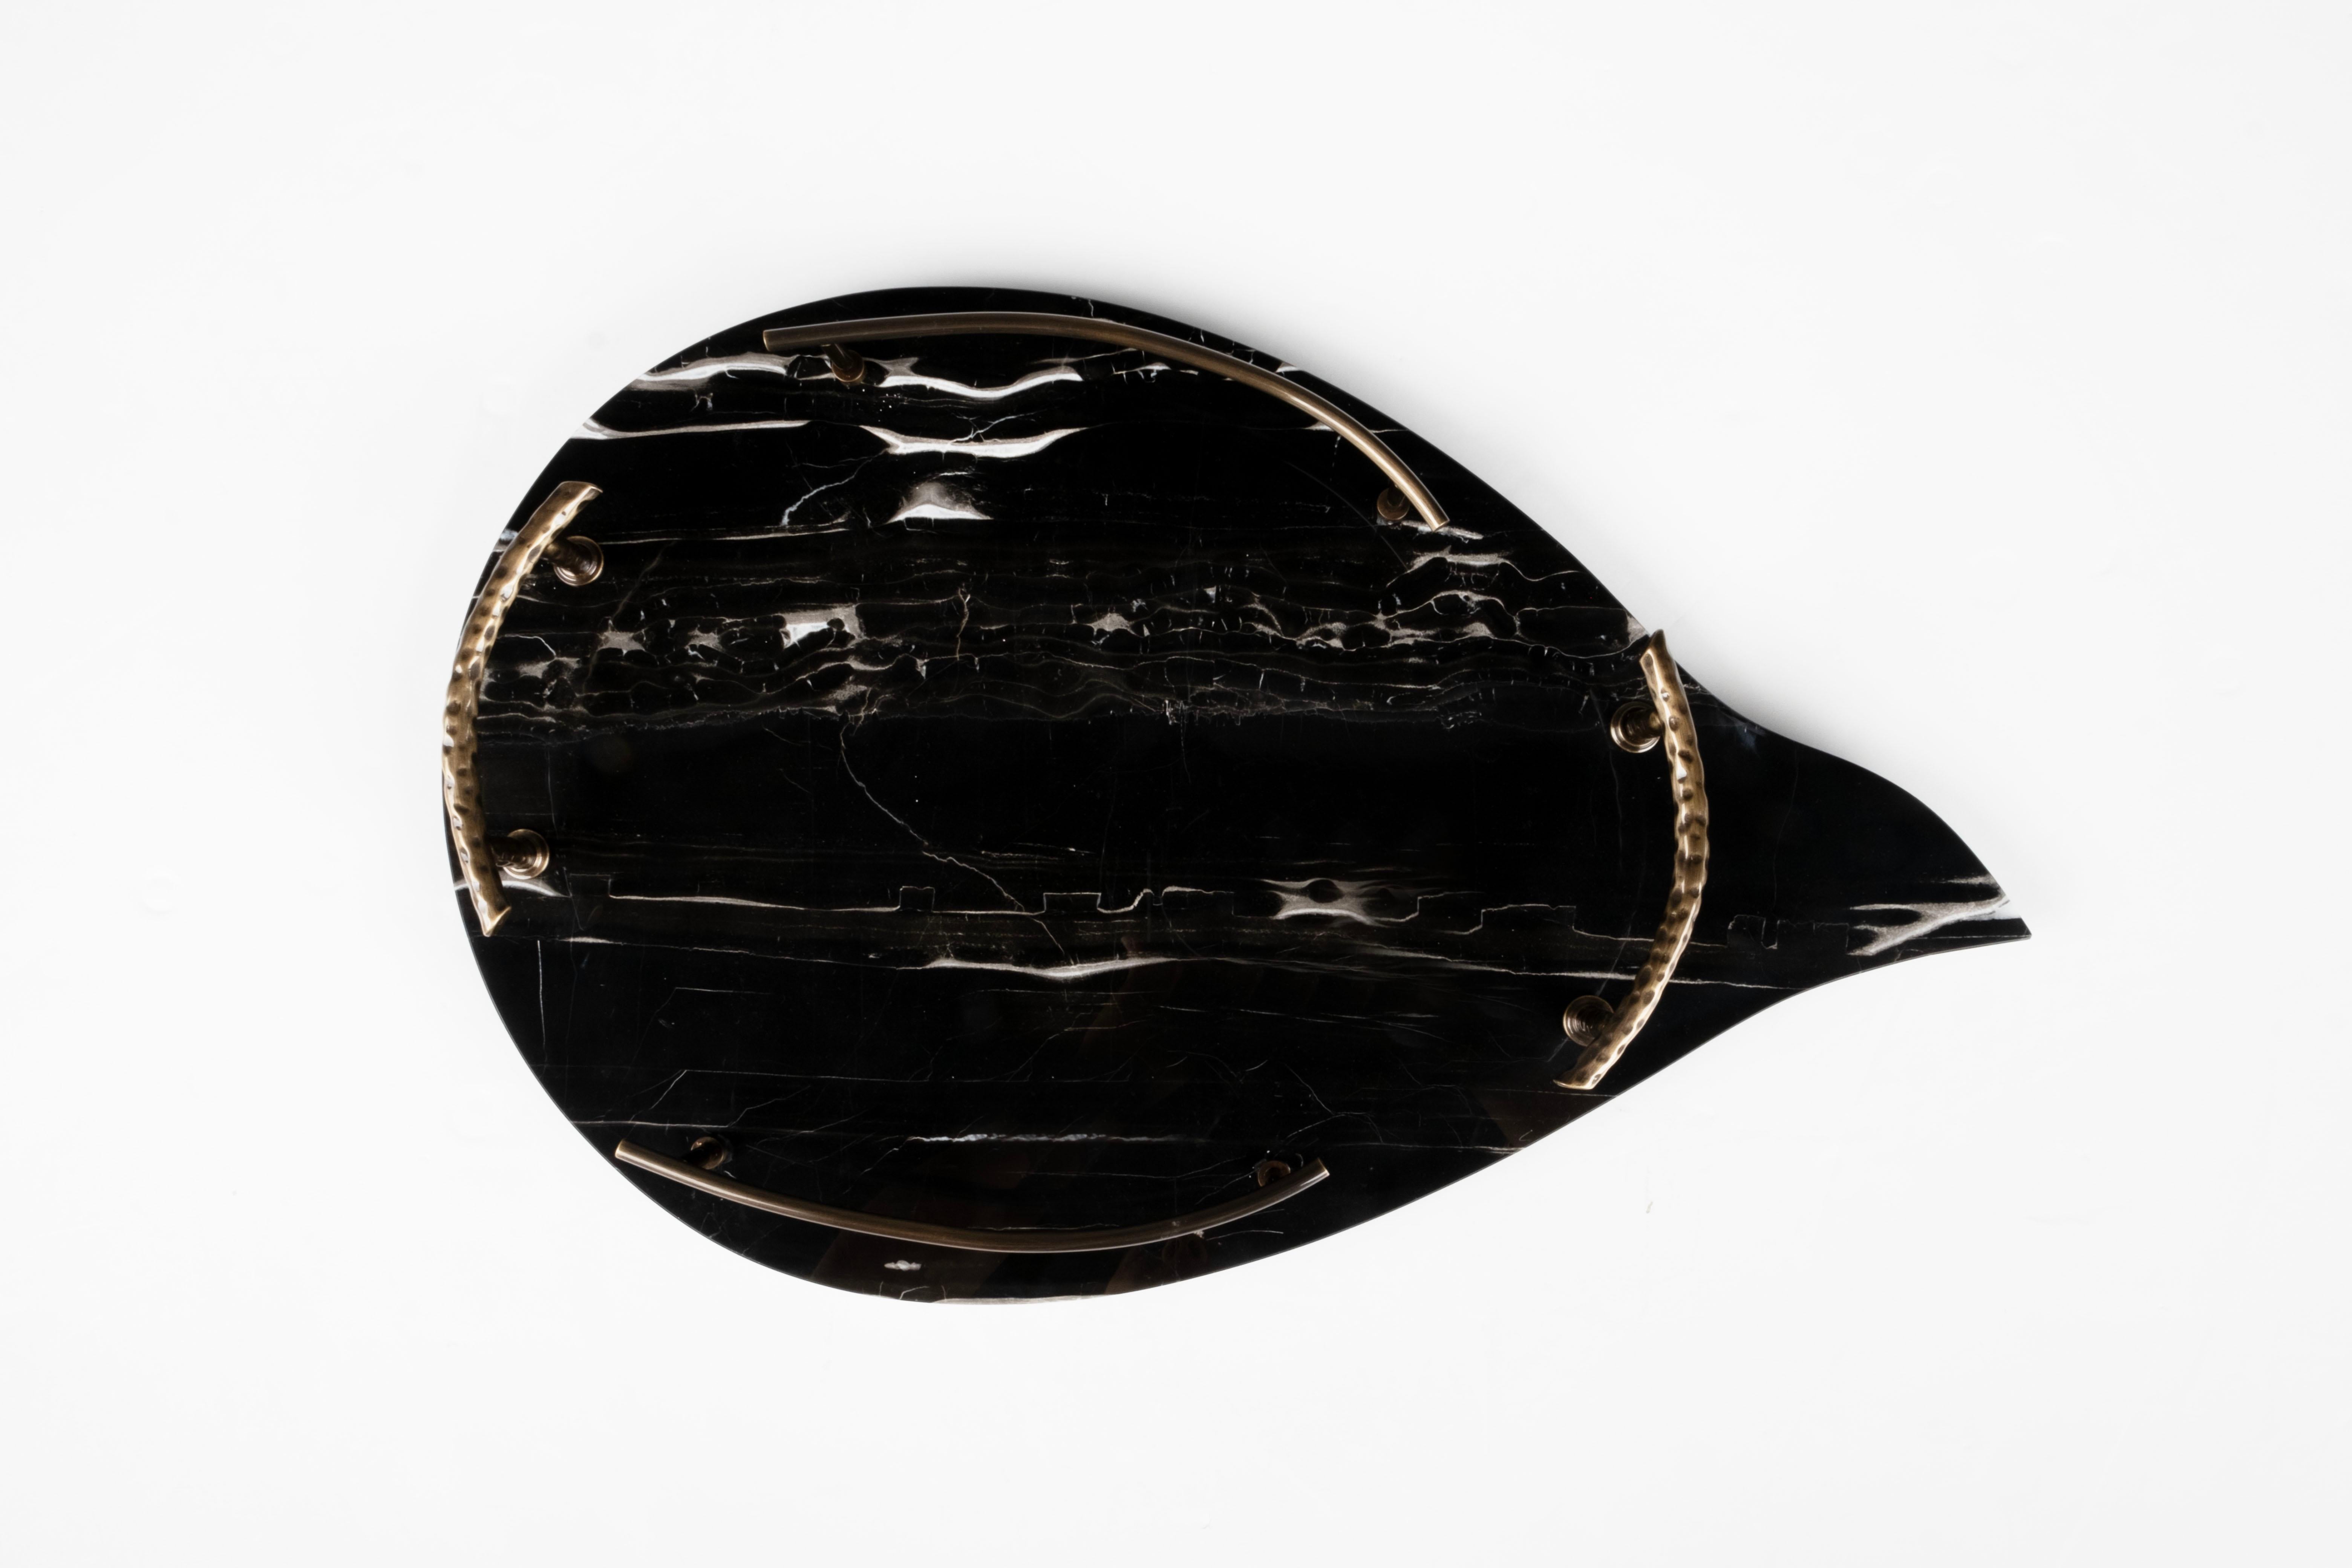 Serviertablett Sakai, Lusitanus Home Collection, Handgefertigt in Portugal - Europa von Lusitanus Home.

Sakai ist ein erhabenes Serviertablett, das zum Verweilen einlädt. Sakai ist ein organisch geformtes Serviertablett aus Portoro-Marmor mit